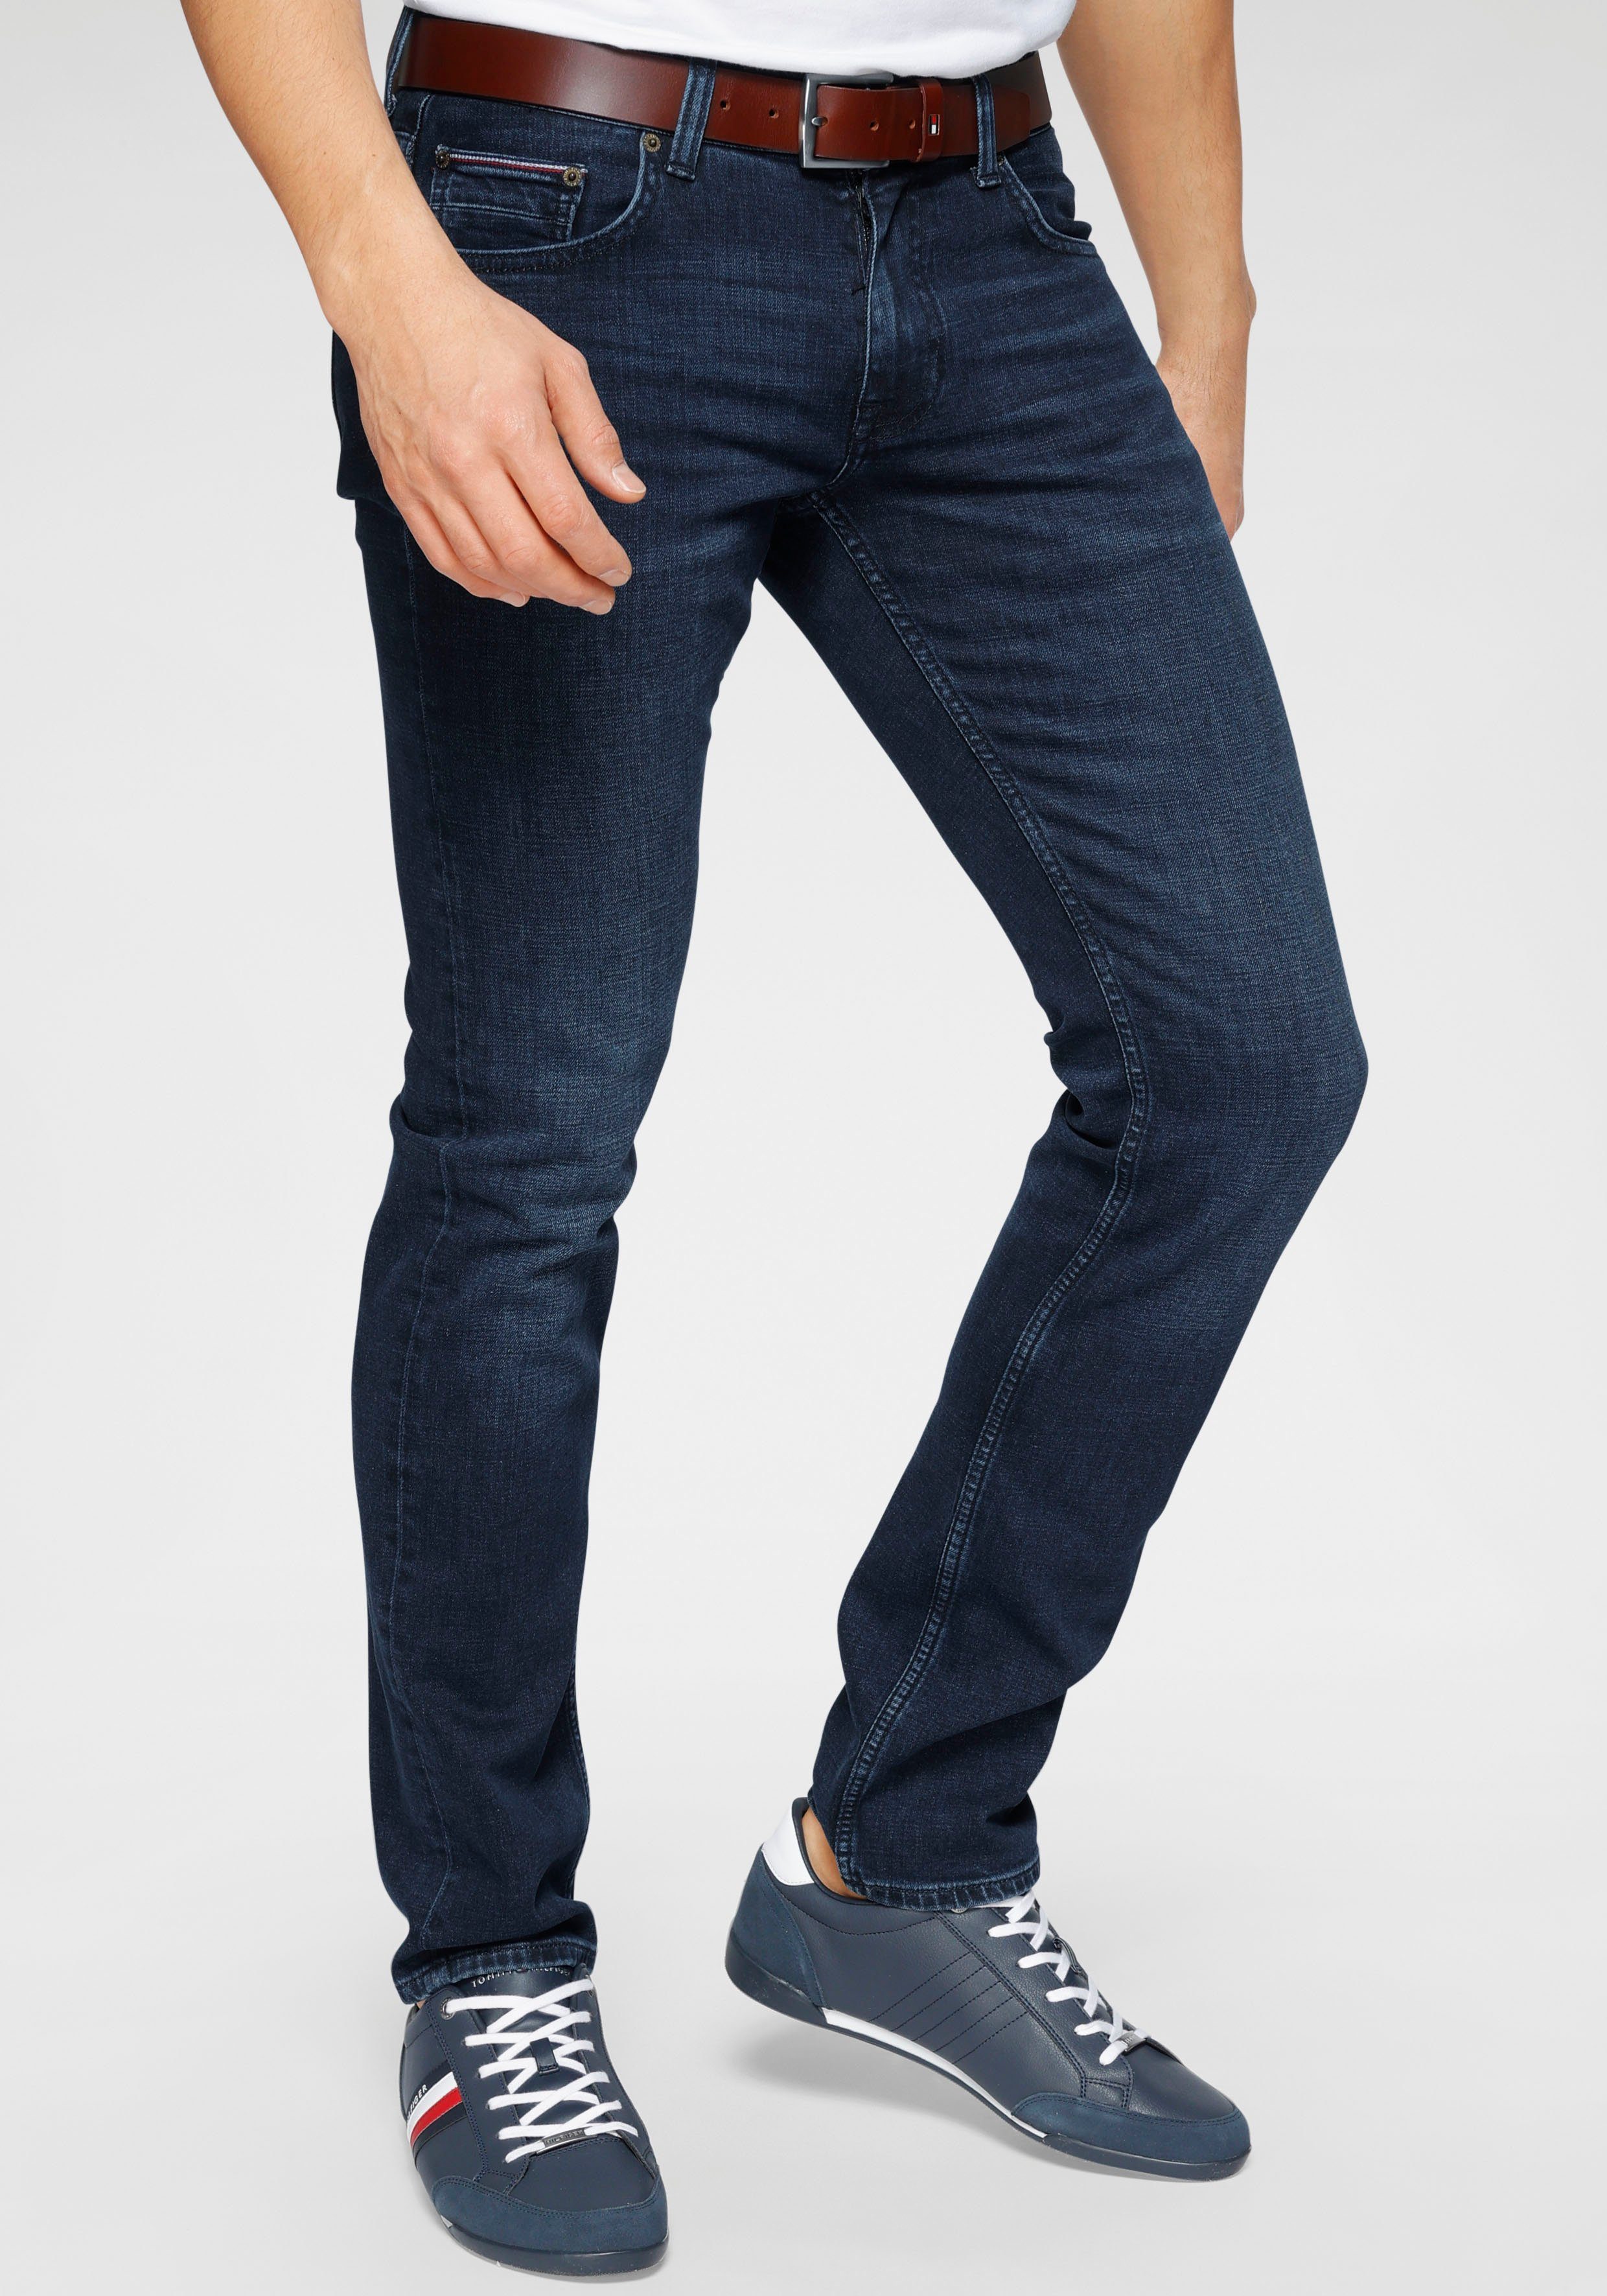 Tommy Hilfiger Jeans Herren online kaufen | OTTO